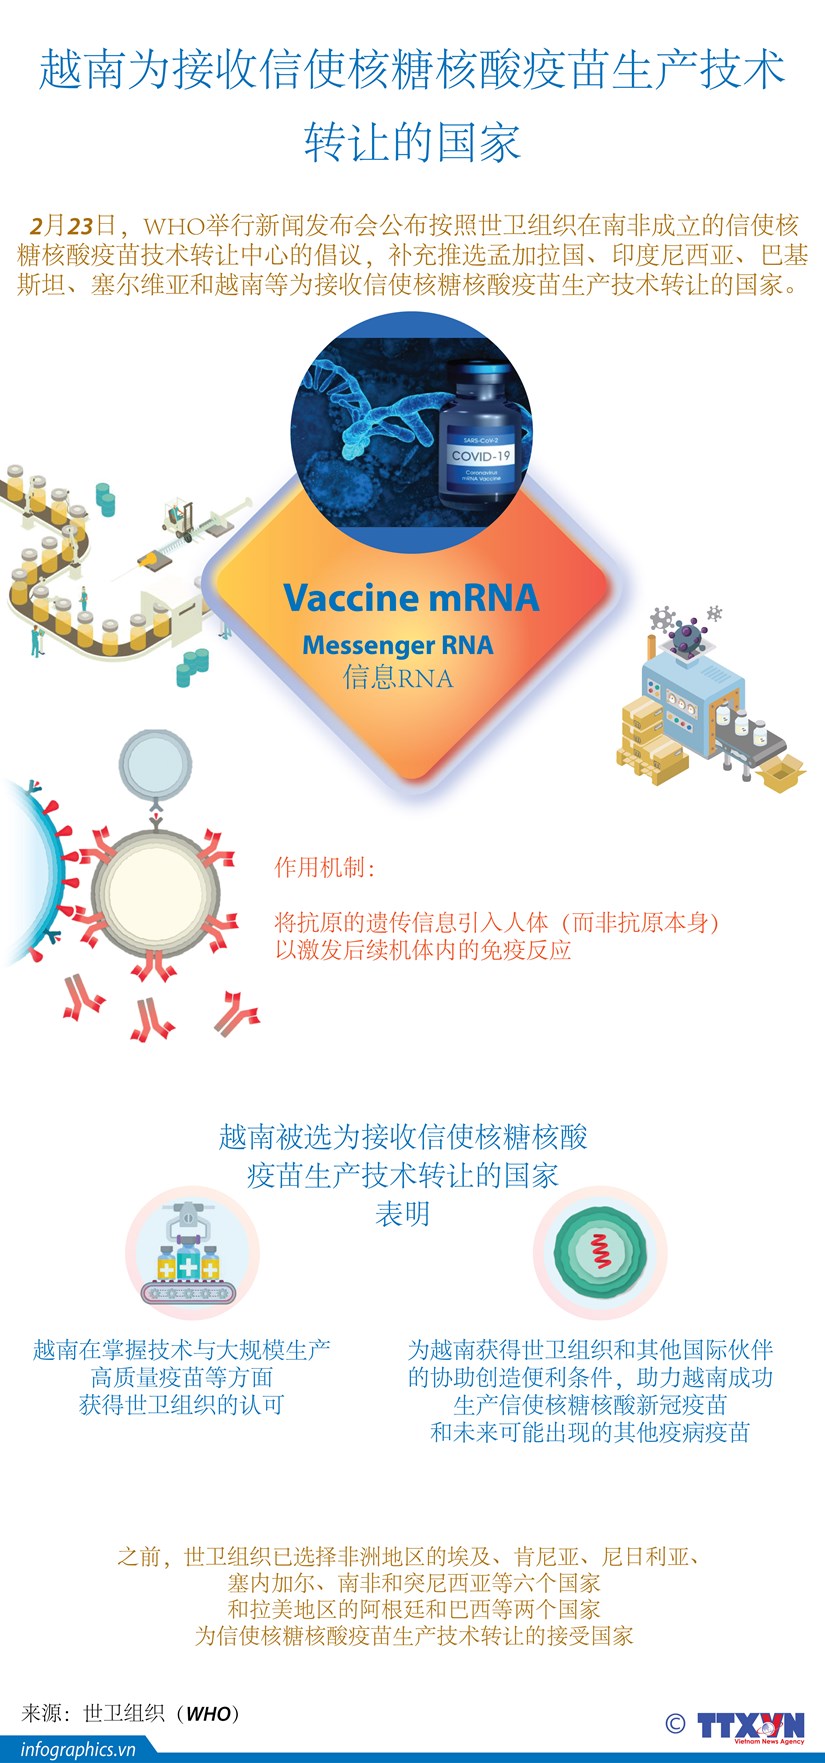 图表新闻：越南为接收信使核糖核酸疫苗生产技术转让的国家 hinh anh 1